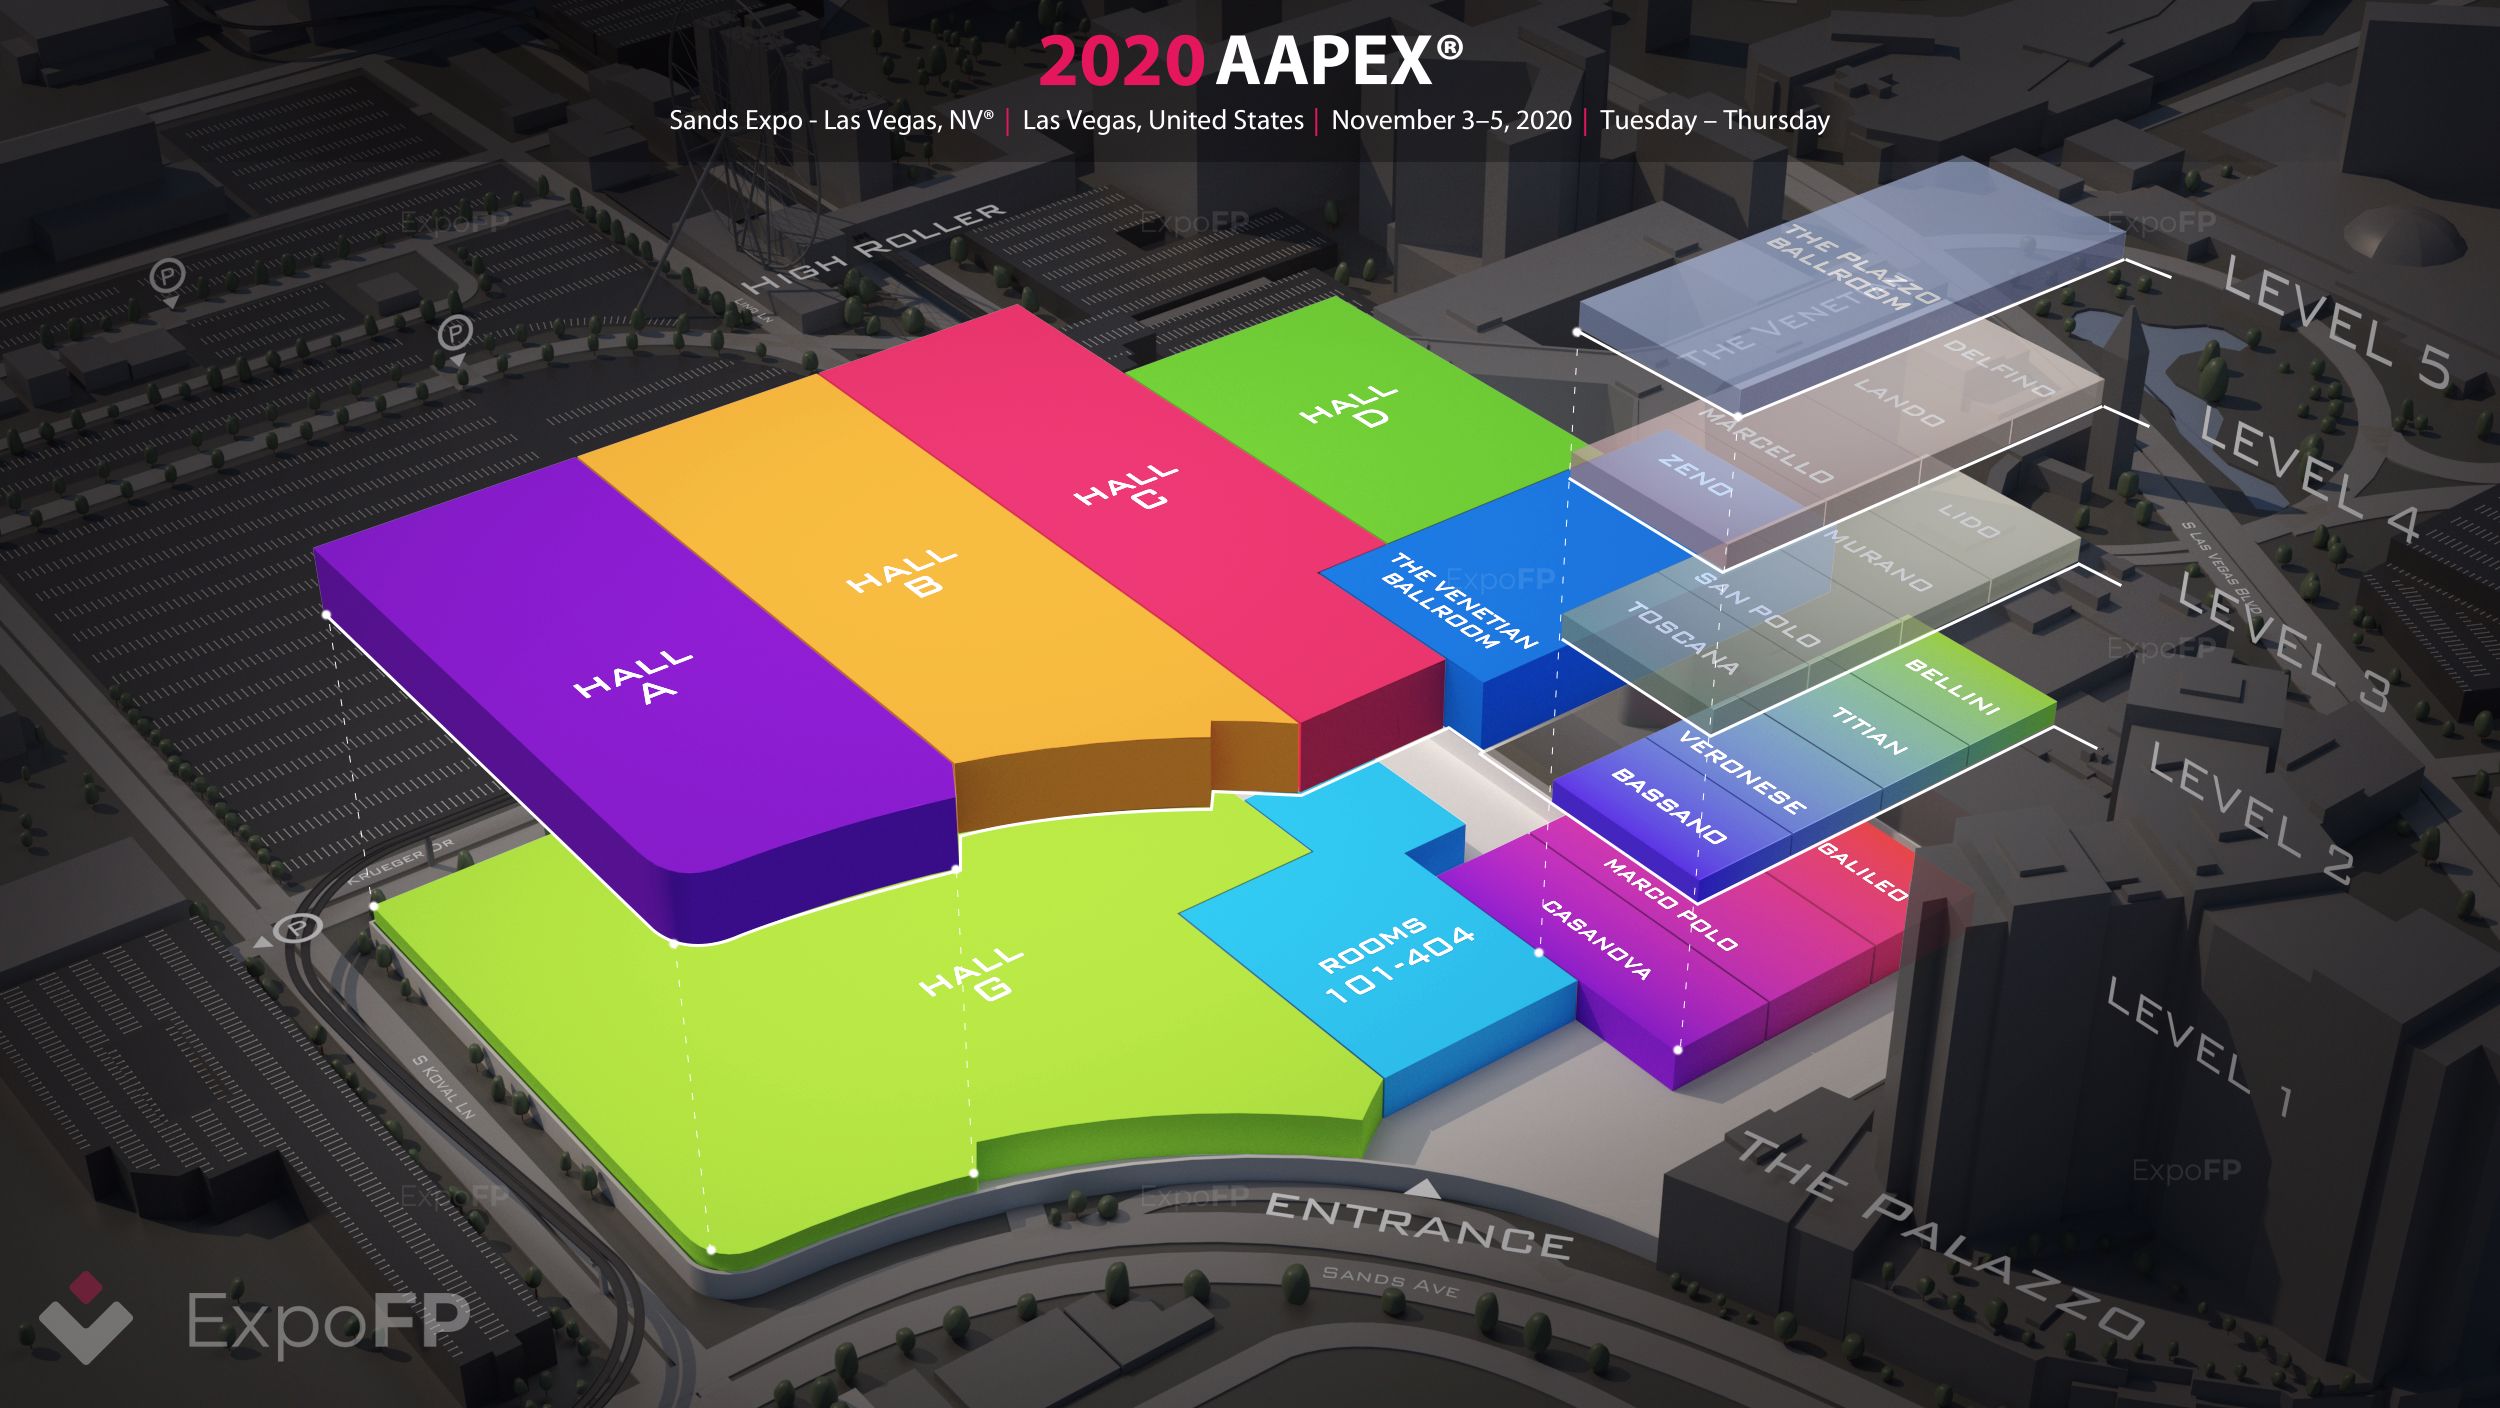 AAPEX 2020 in Sands Expo Las Vegas, NV